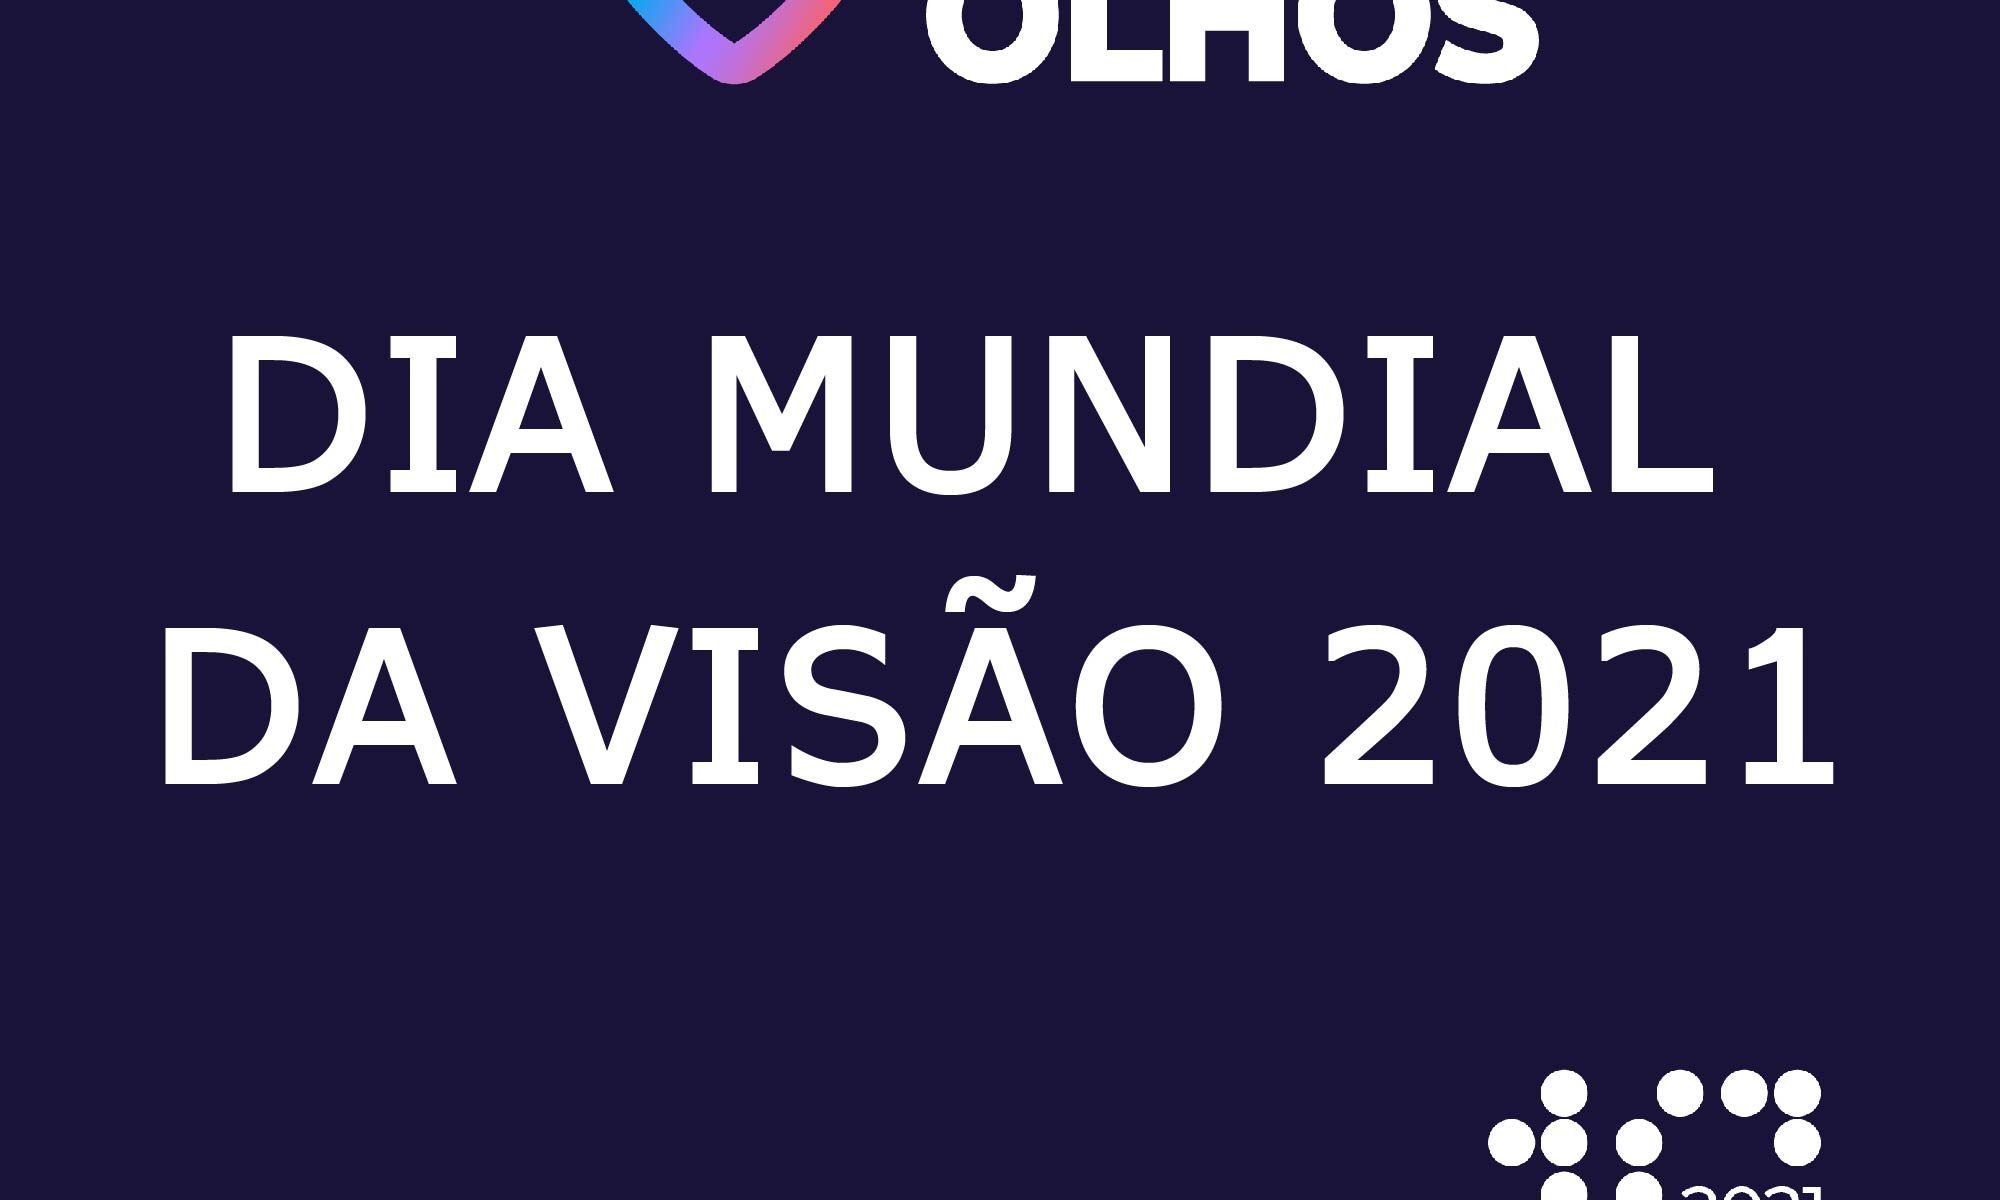 imagem de fundo escuro com escrito grande: 'Dia Mundial da Visão 2021" há as logos Ame seus olhos, Dia Mundial da Visão 2021, Retina Brasil e Novarits